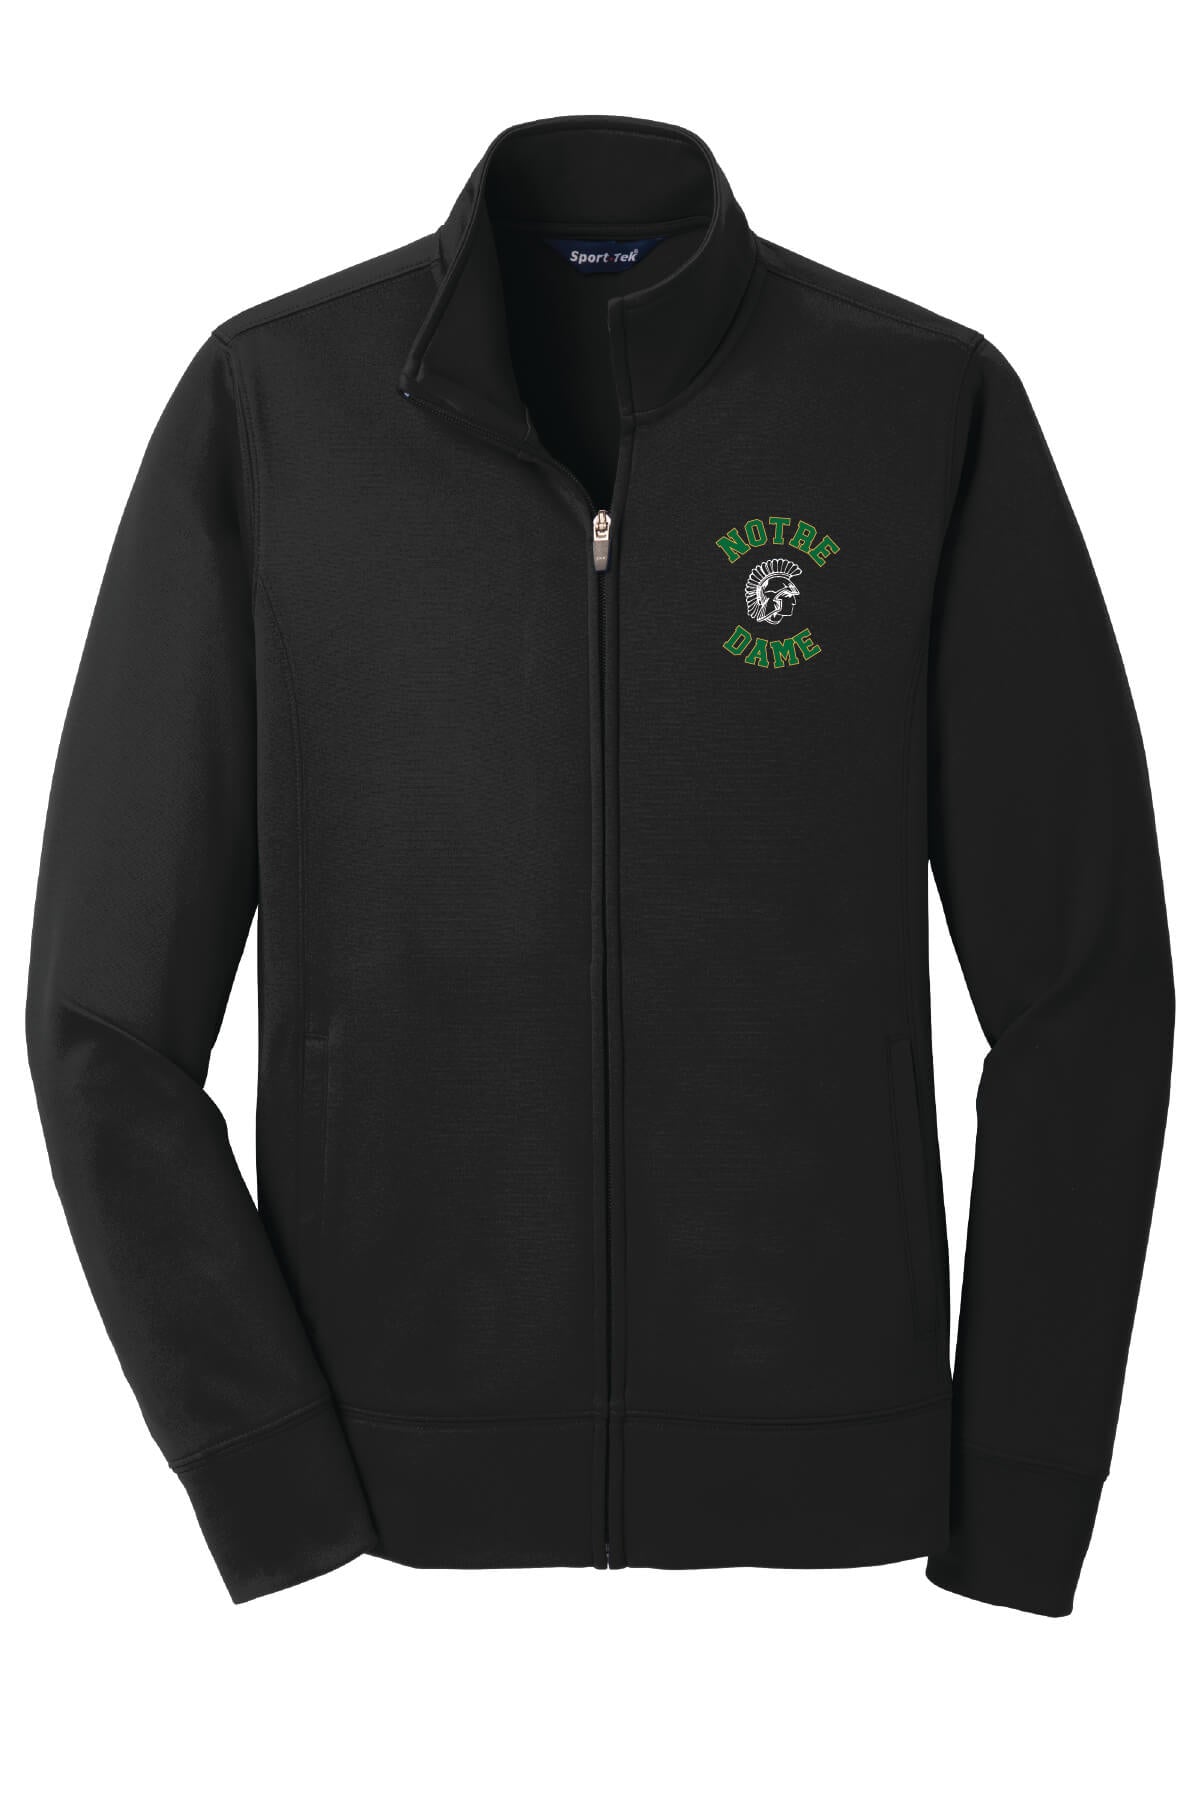 Spartans "S" Fleece Full-Zip Jacket (Ladies) front-black